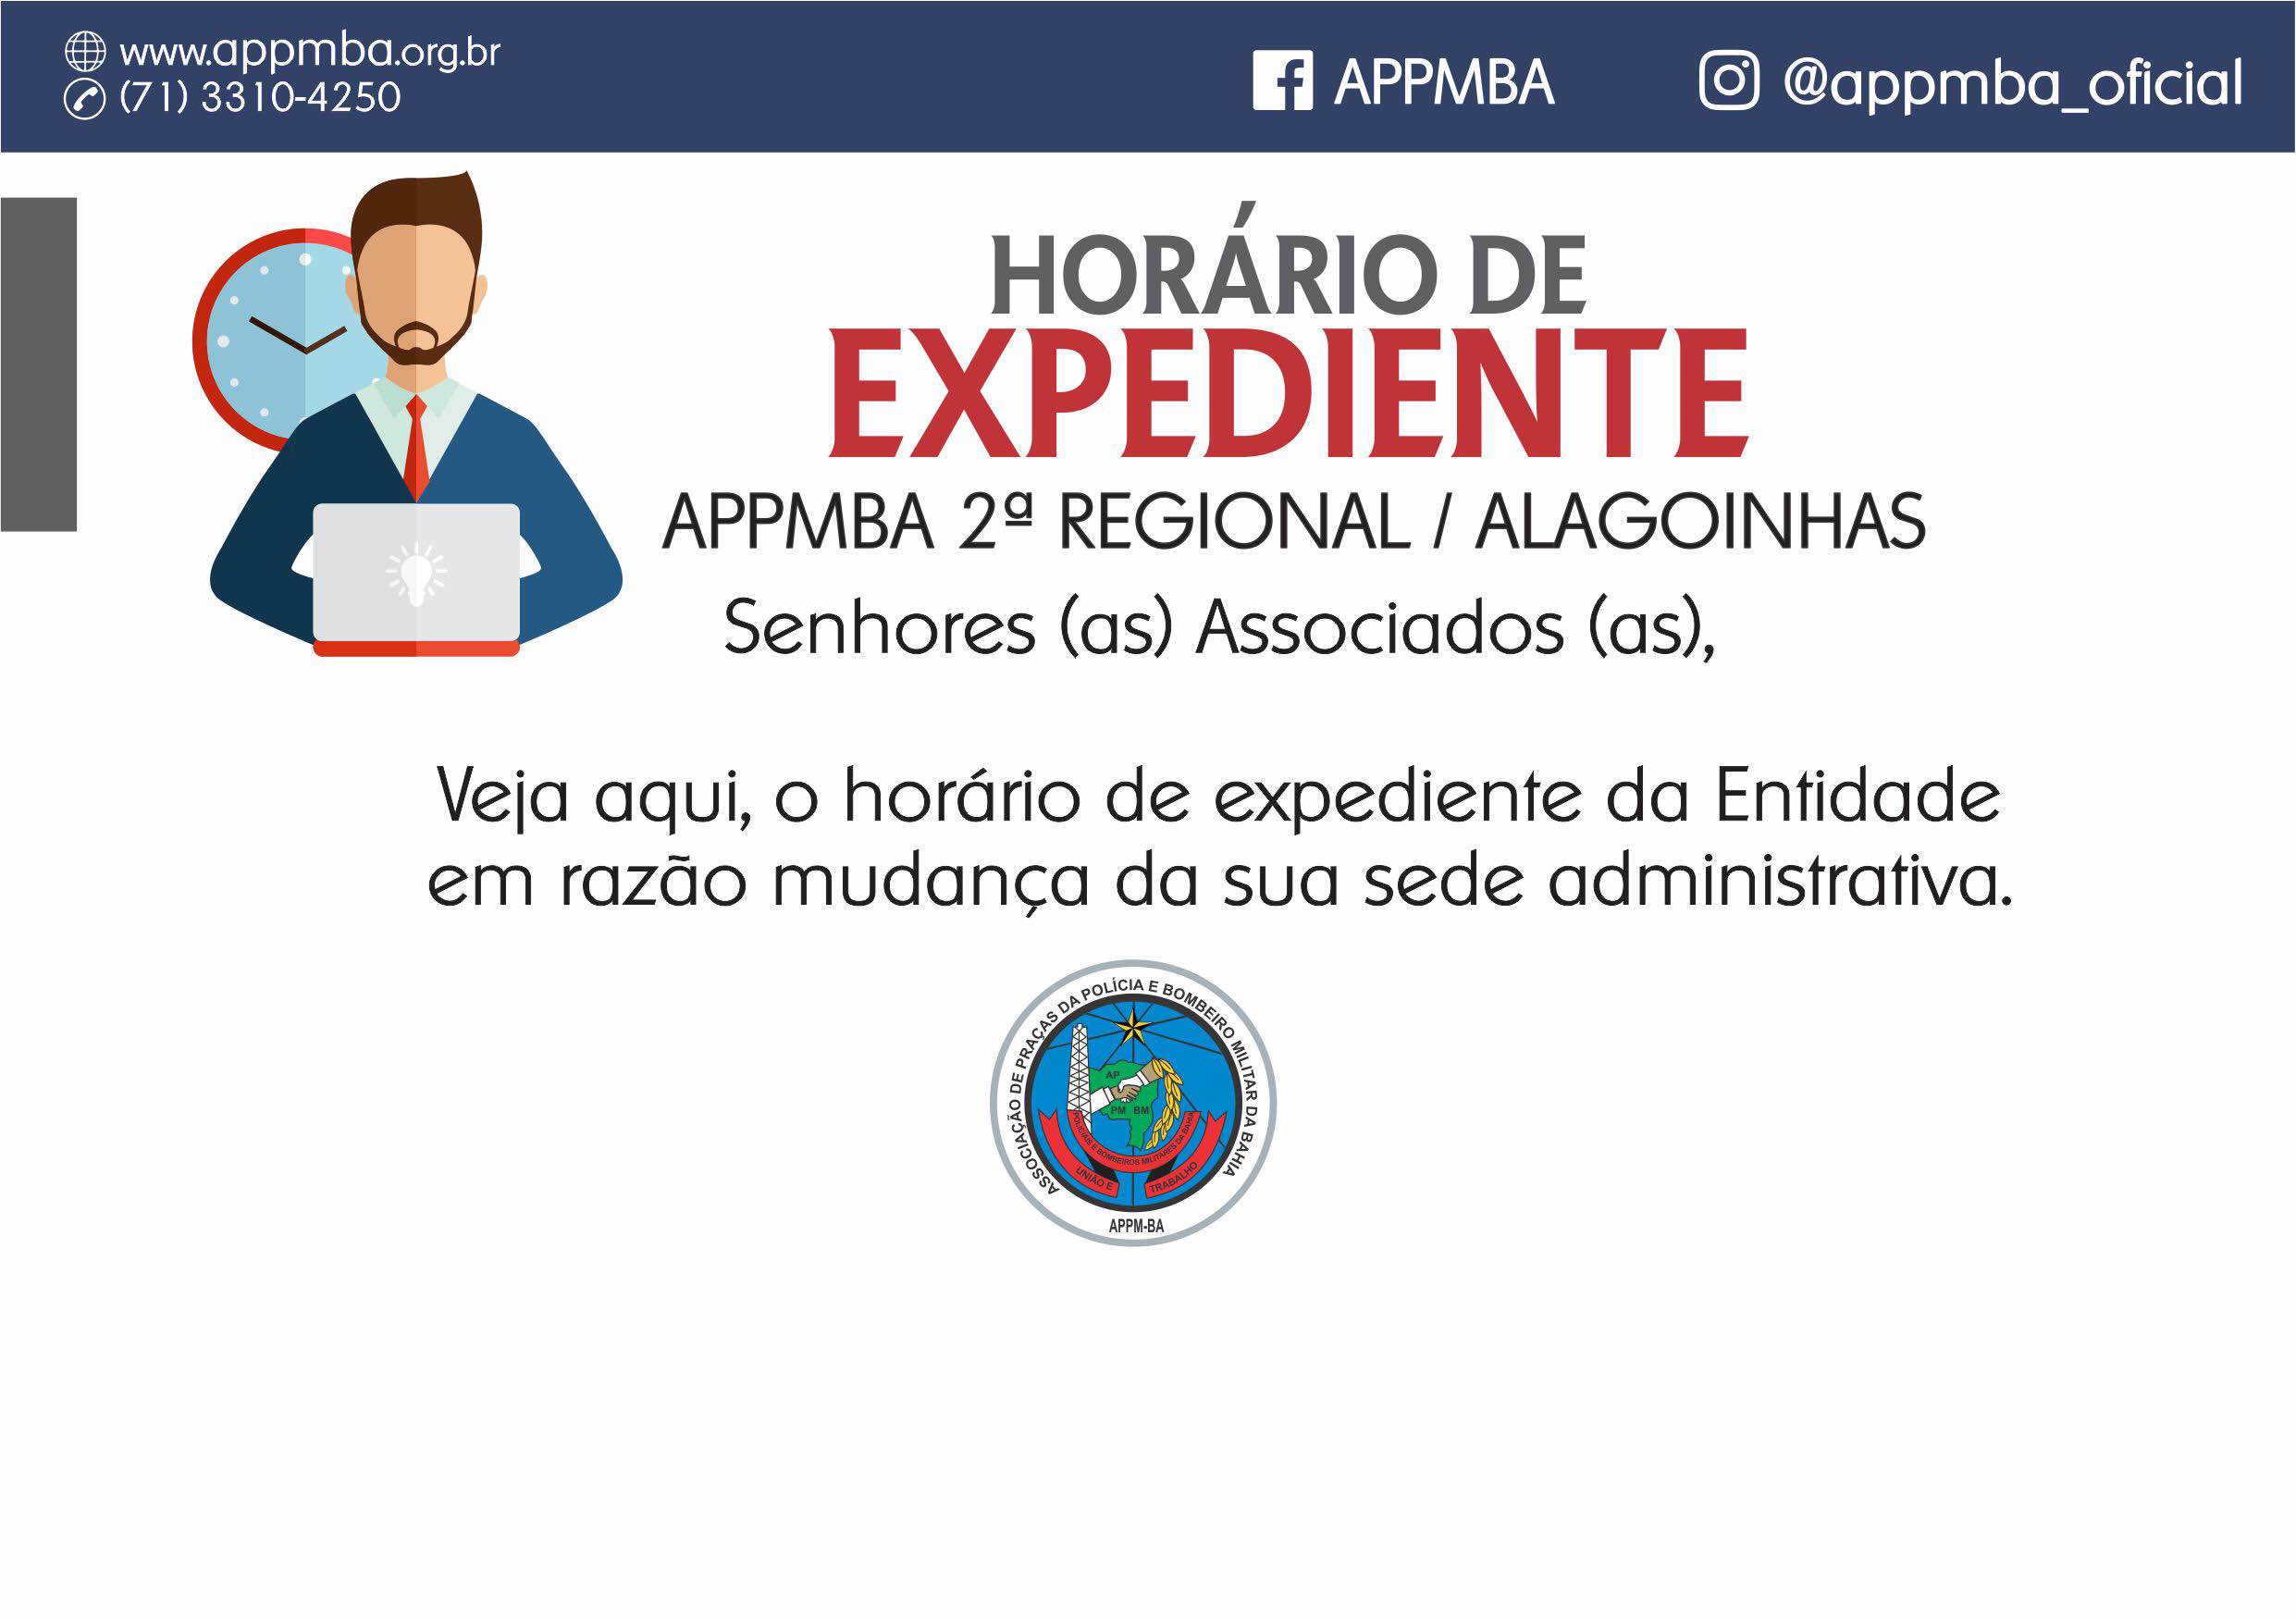 Horário de expediente  APPMBA 2ª  Regional / Alagoinhas